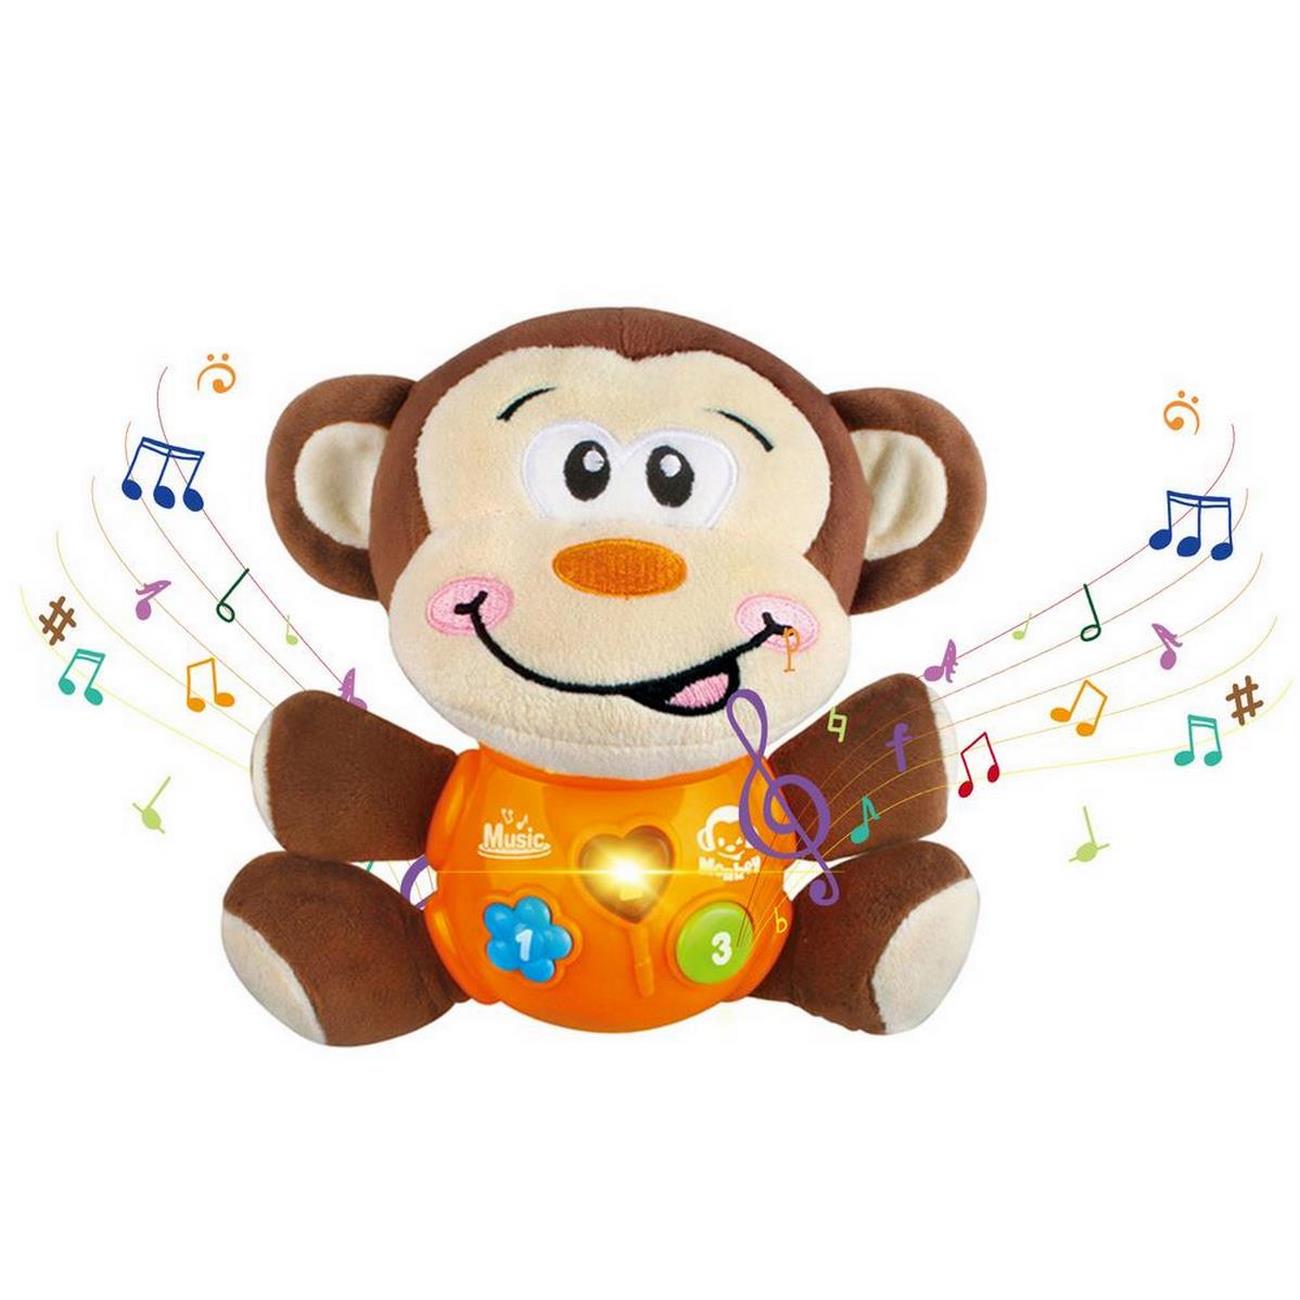 Juguete Mono Didactico Luces Sonido Musical Bebes + Baterias